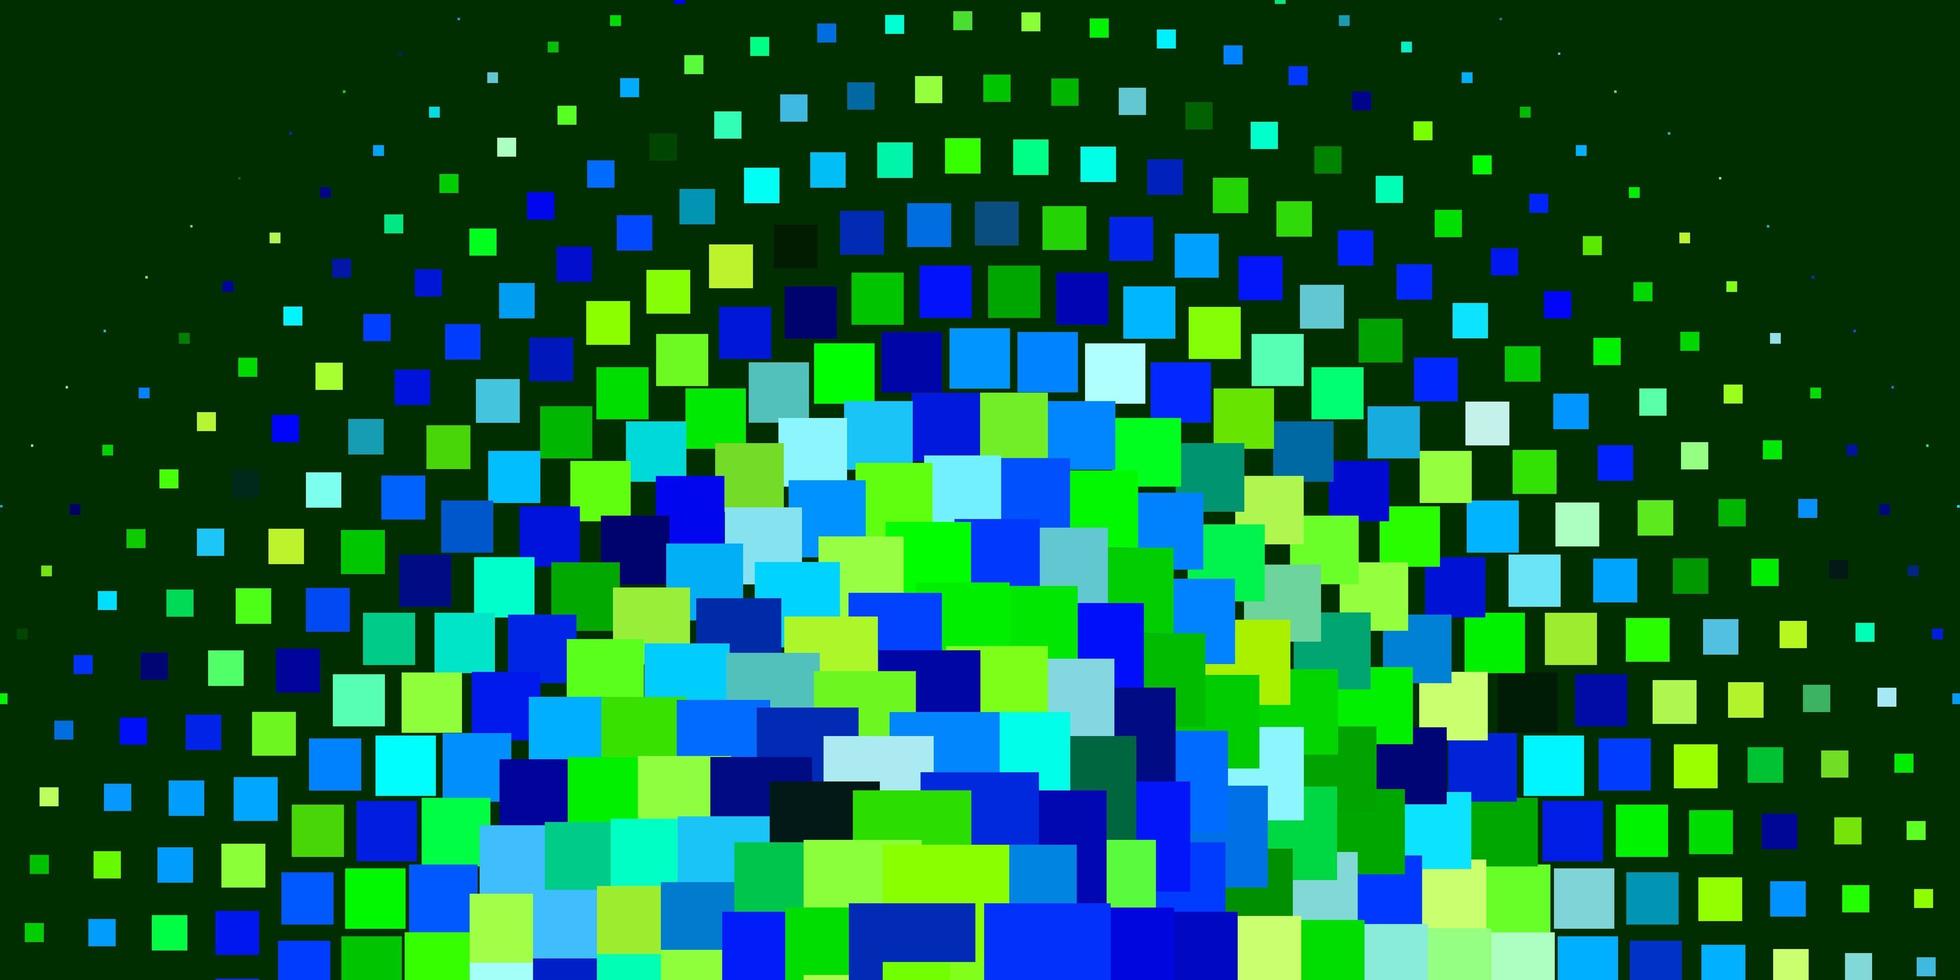 hellblauer, grüner Vektorhintergrund mit Rechtecken. Rechtecke mit buntem Farbverlauf auf abstraktem Hintergrund. Muster für Websites, Zielseiten. vektor